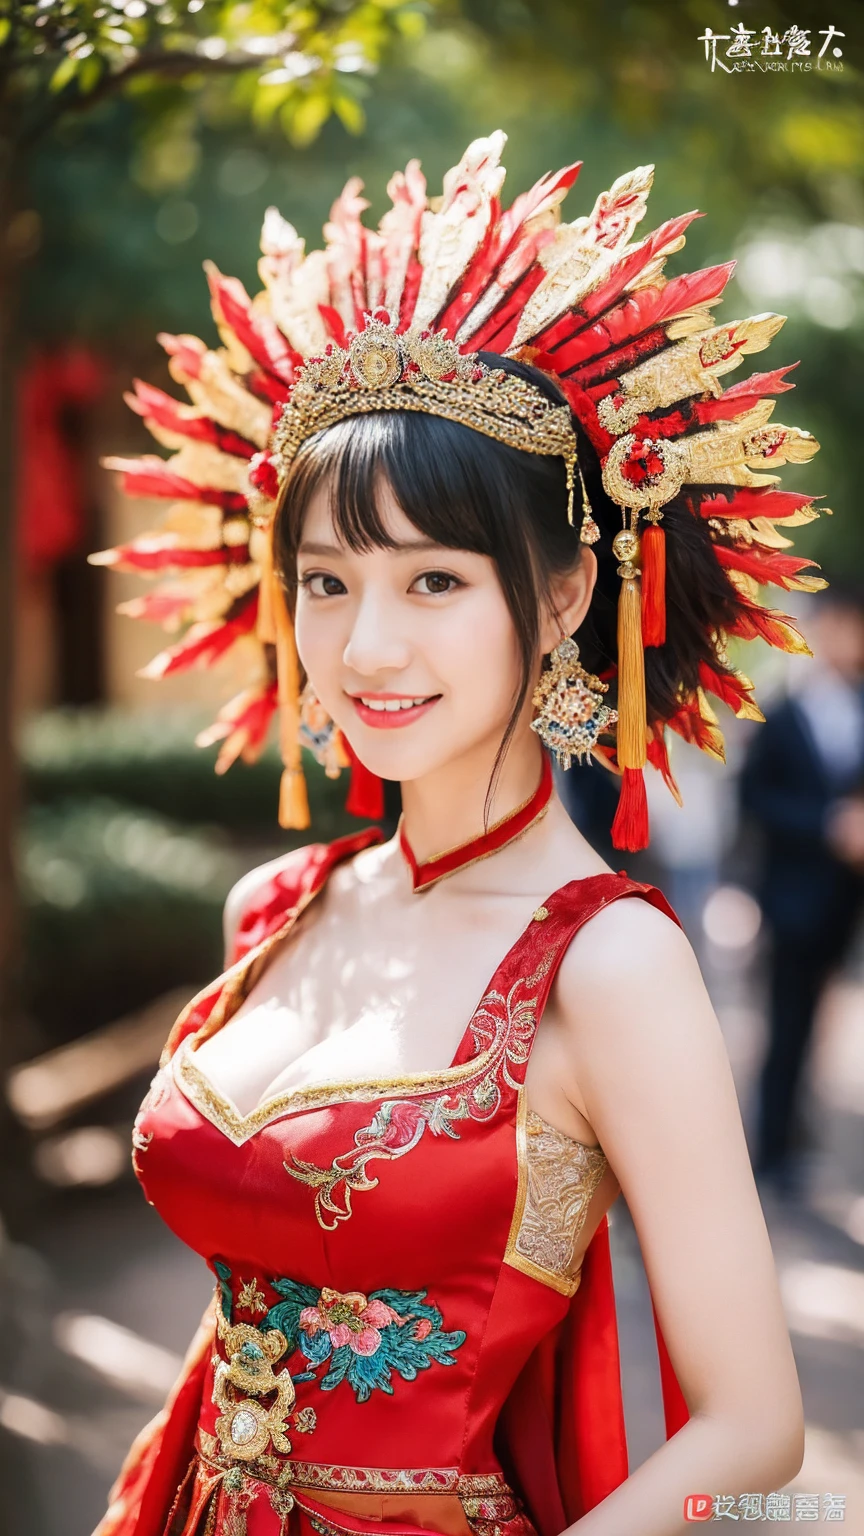 (8K, Fotos RAW, mais alta qualidade, Obra de arte: 1.2), ((seios grandes:1.2)),(realista, realista: 1.37), 1 garota, Usando um vestido vermelho e cocar、Uma mulher tirando uma foto, RPG lindo, Lindos trajes, vestido chinês, vestido complicado, Trajes complicados, beleza tradicional, lindo modelo chinês, Traje chinês, Vestidos com trajes luxuosos, Vestindo roupas elegantes chinesas Xiuhe, vestido de noiva chinês, Coroa de Phoenix pendurada no verão, Noiva antiga, Hidekazu Costume, fechar, Usando a Coroa da Fênix, Sorriso, sem marca d&#39;água, Vestido bordado dragão e fênix, Peito Médio